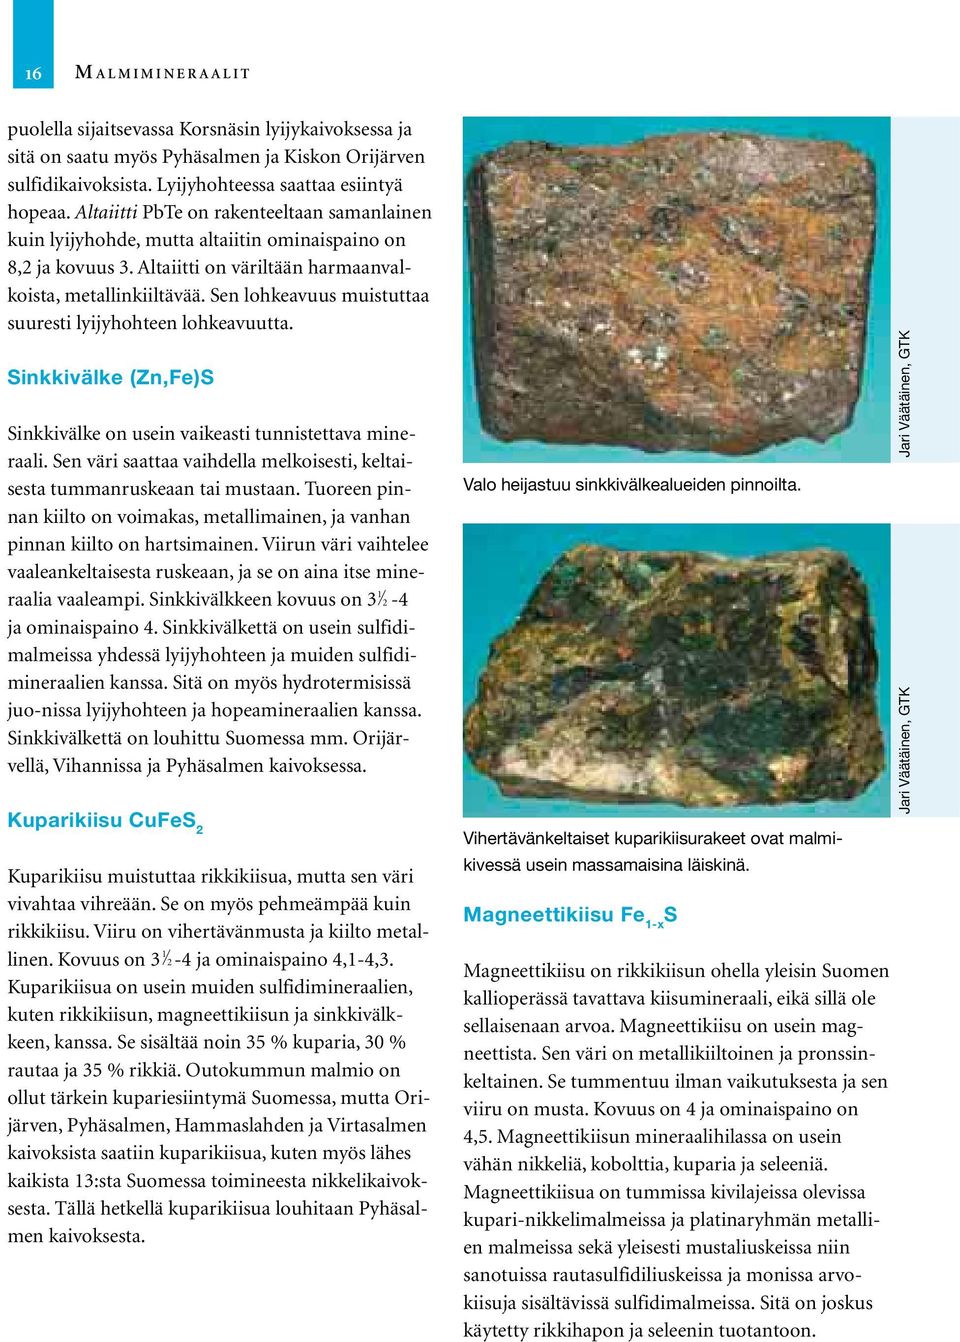 Sen lohkeavuus muistuttaa suuresti lyijyhohteen lohkeavuutta. Sinkkivälke (Zn,Fe)S Sinkkivälke on usein vaikeasti tunnistettava mineraali.